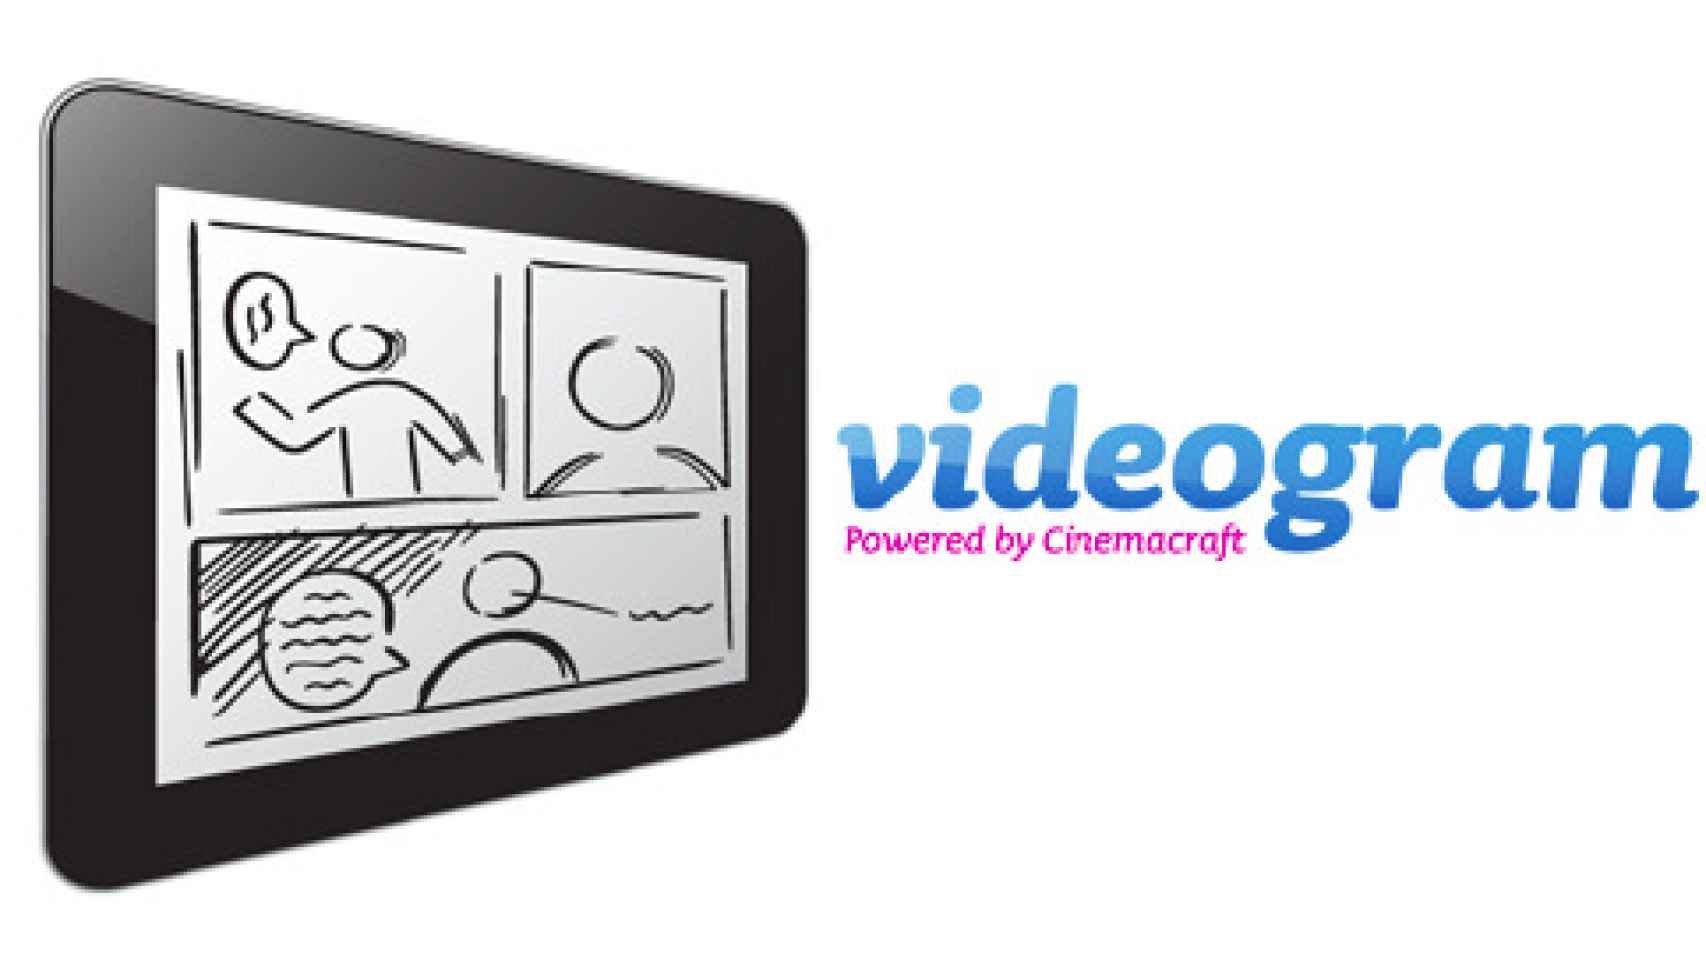 Videogram: La red social de vídeos ya está aquí